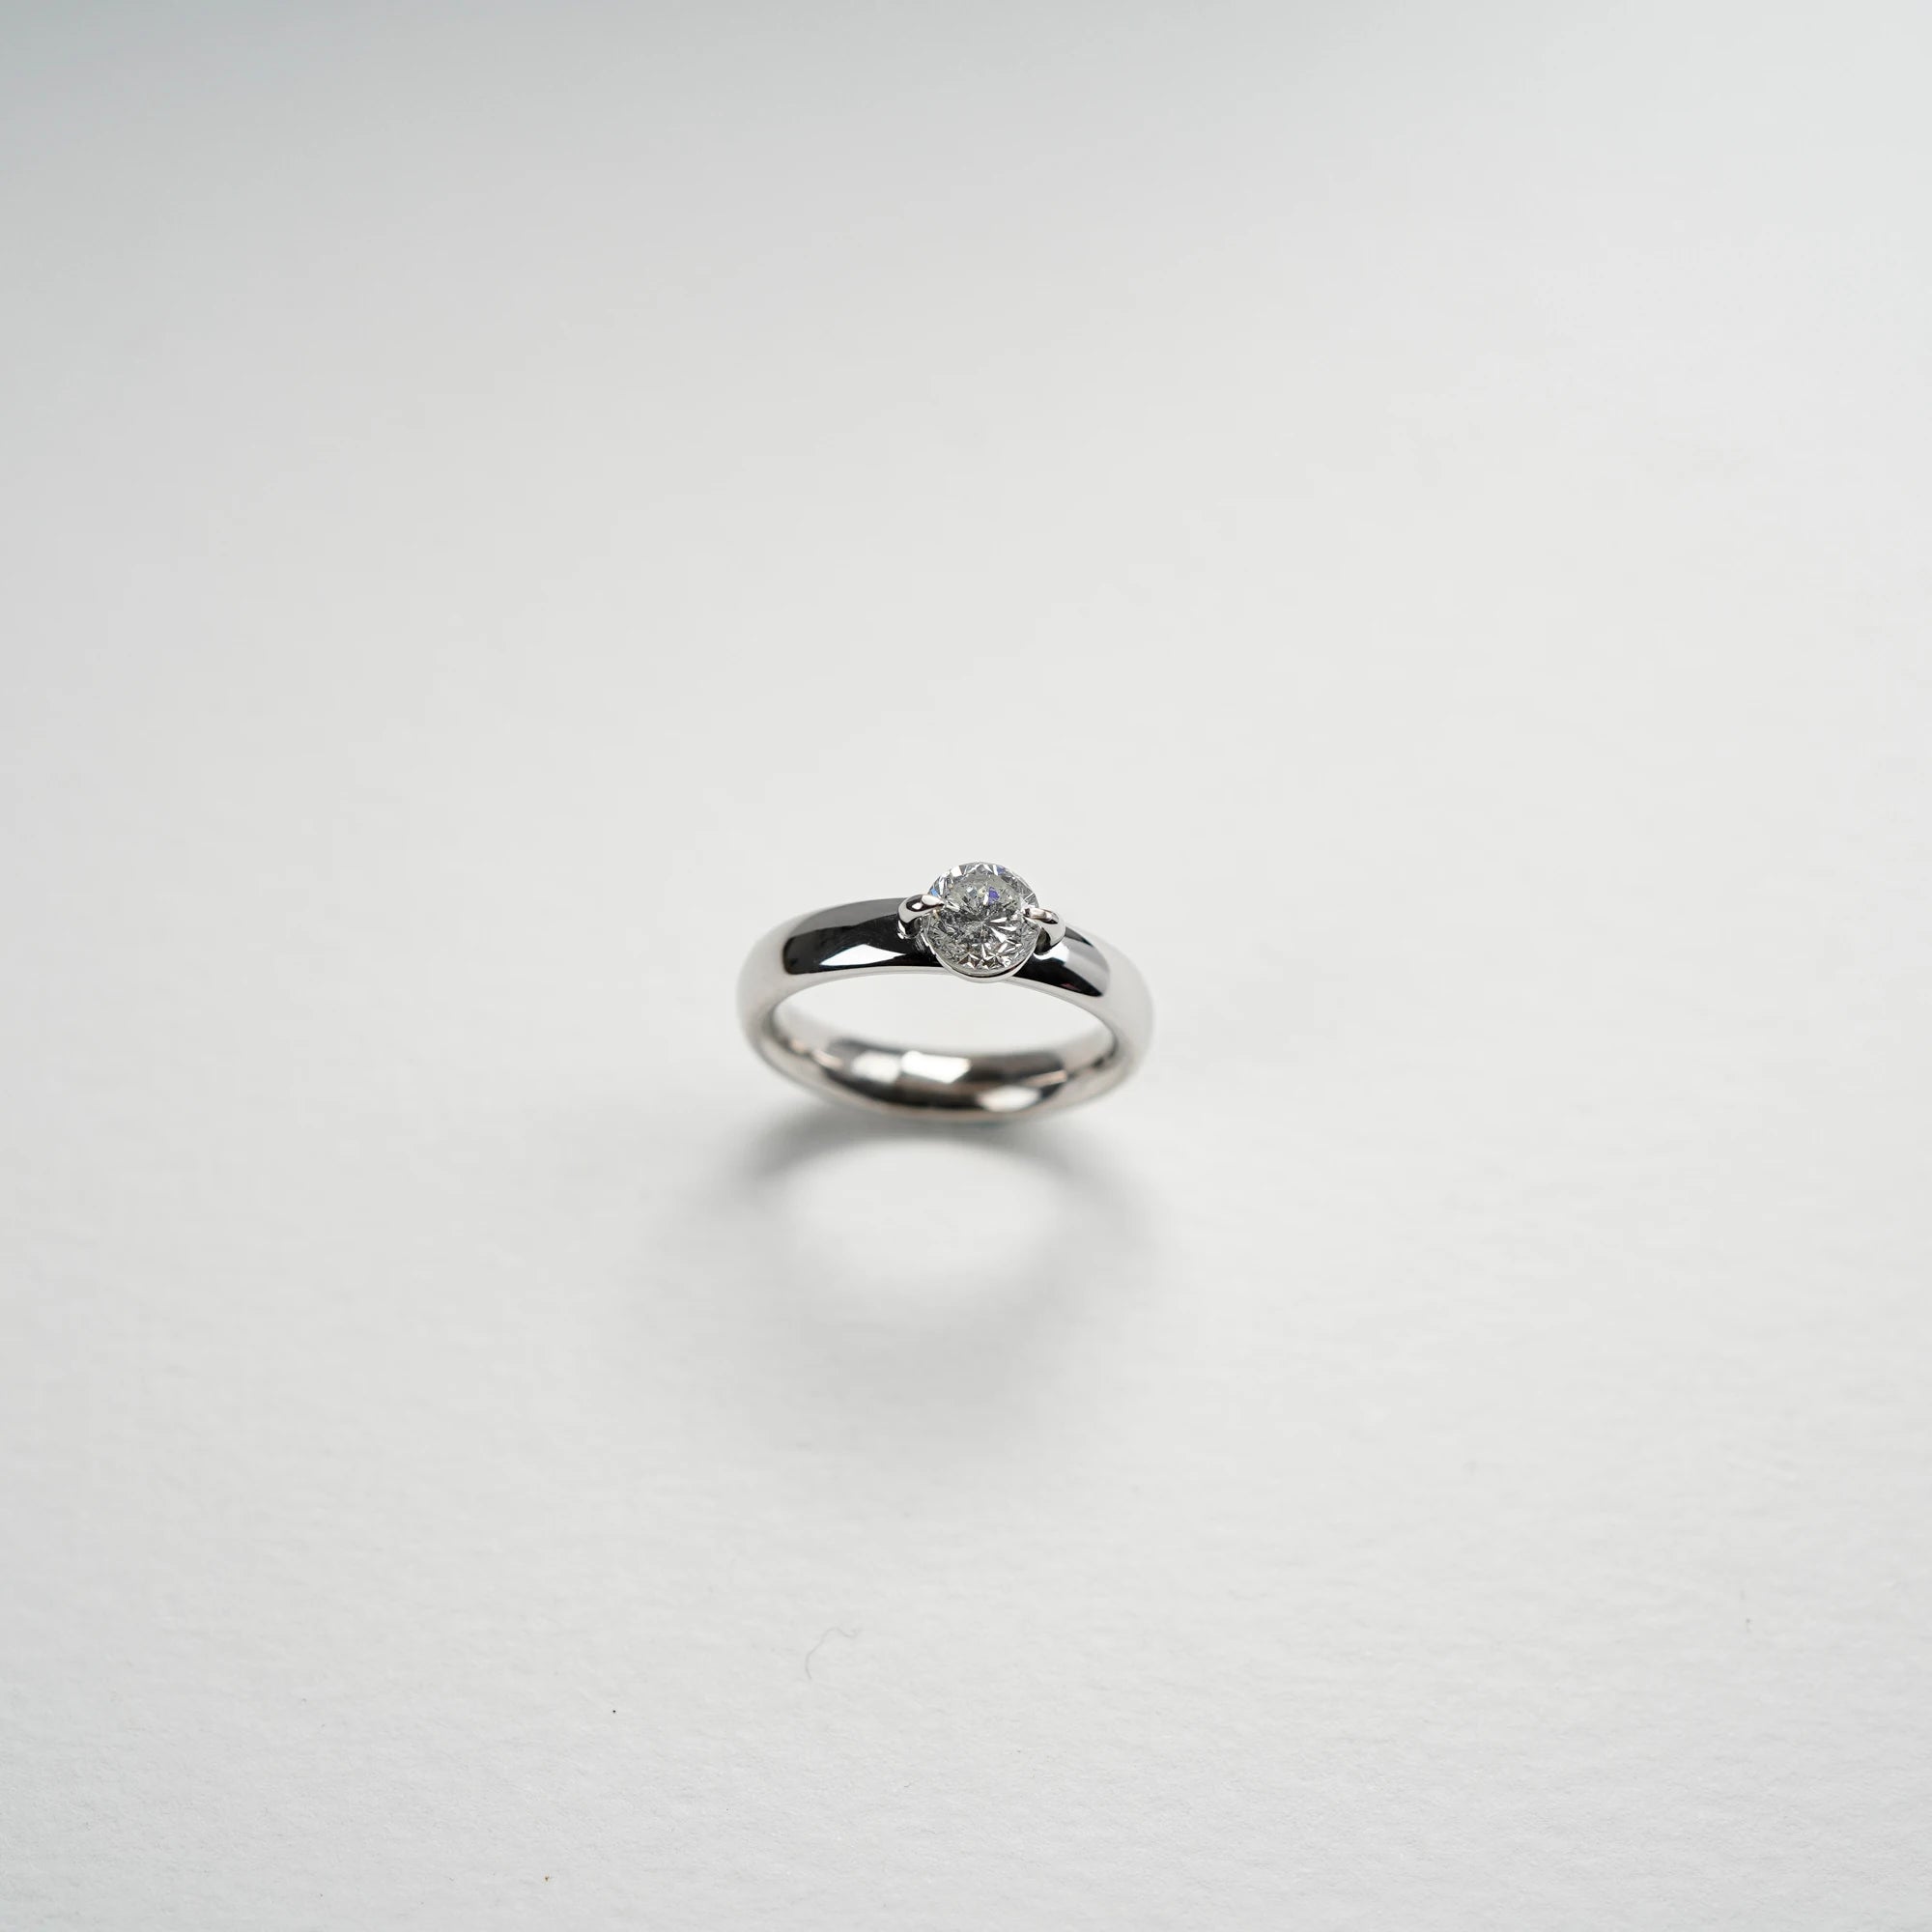 Produktfotografie des Weißgold-Solitaire-Rings mit einem 1,10 Carat Diamanten aus der Schmuckatelier Lang Collection 